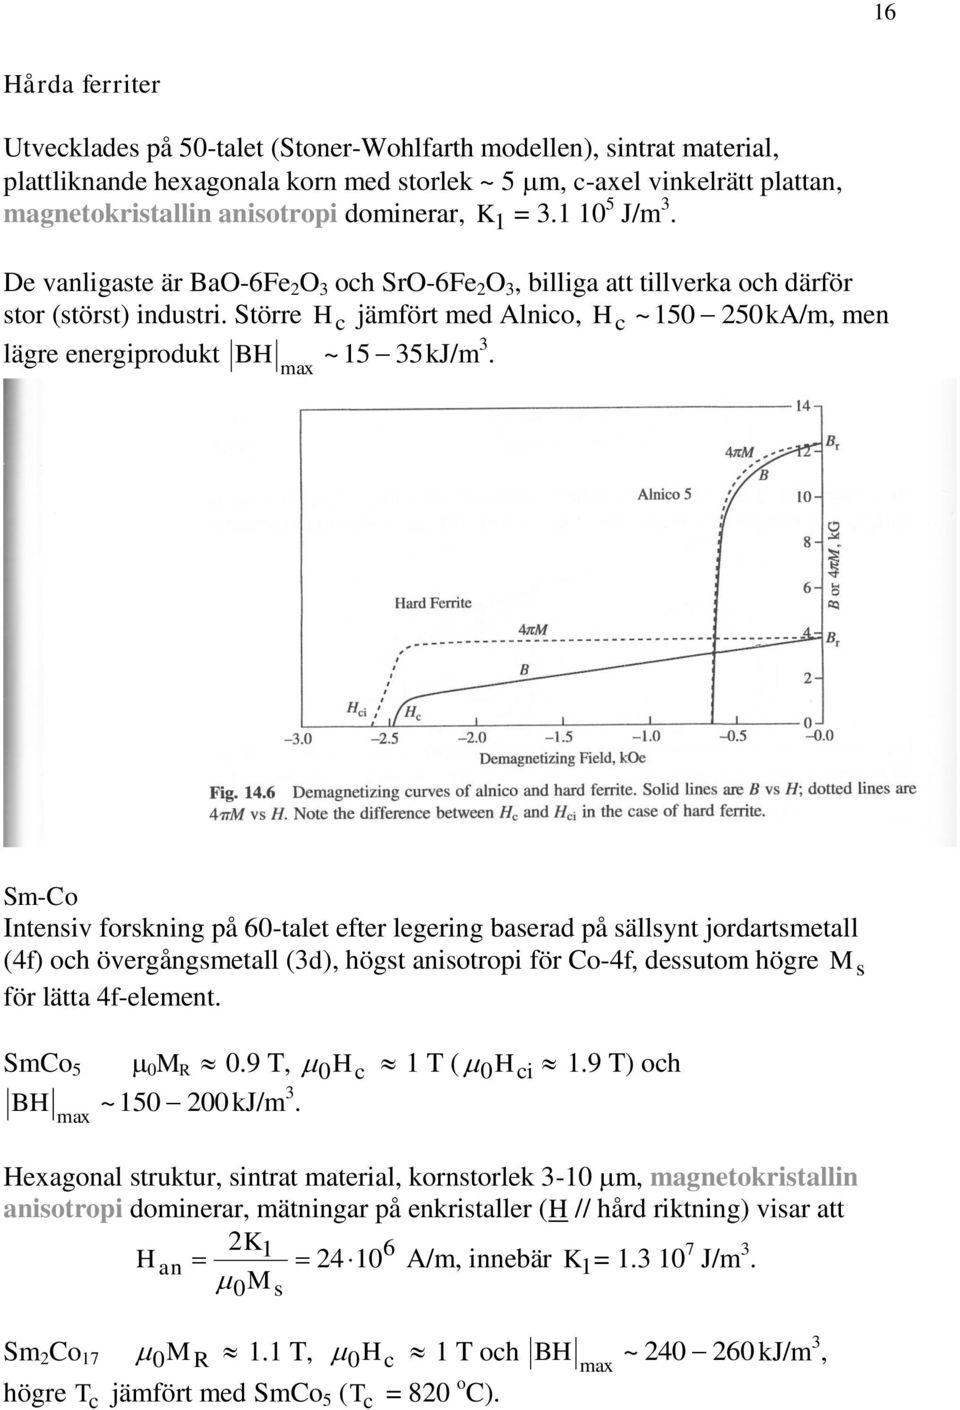 Större H c jämfört med Alnico, Hc ~ 15 5kA/m, men lägre energiprodukt BH ~15 35kJ/m 3.